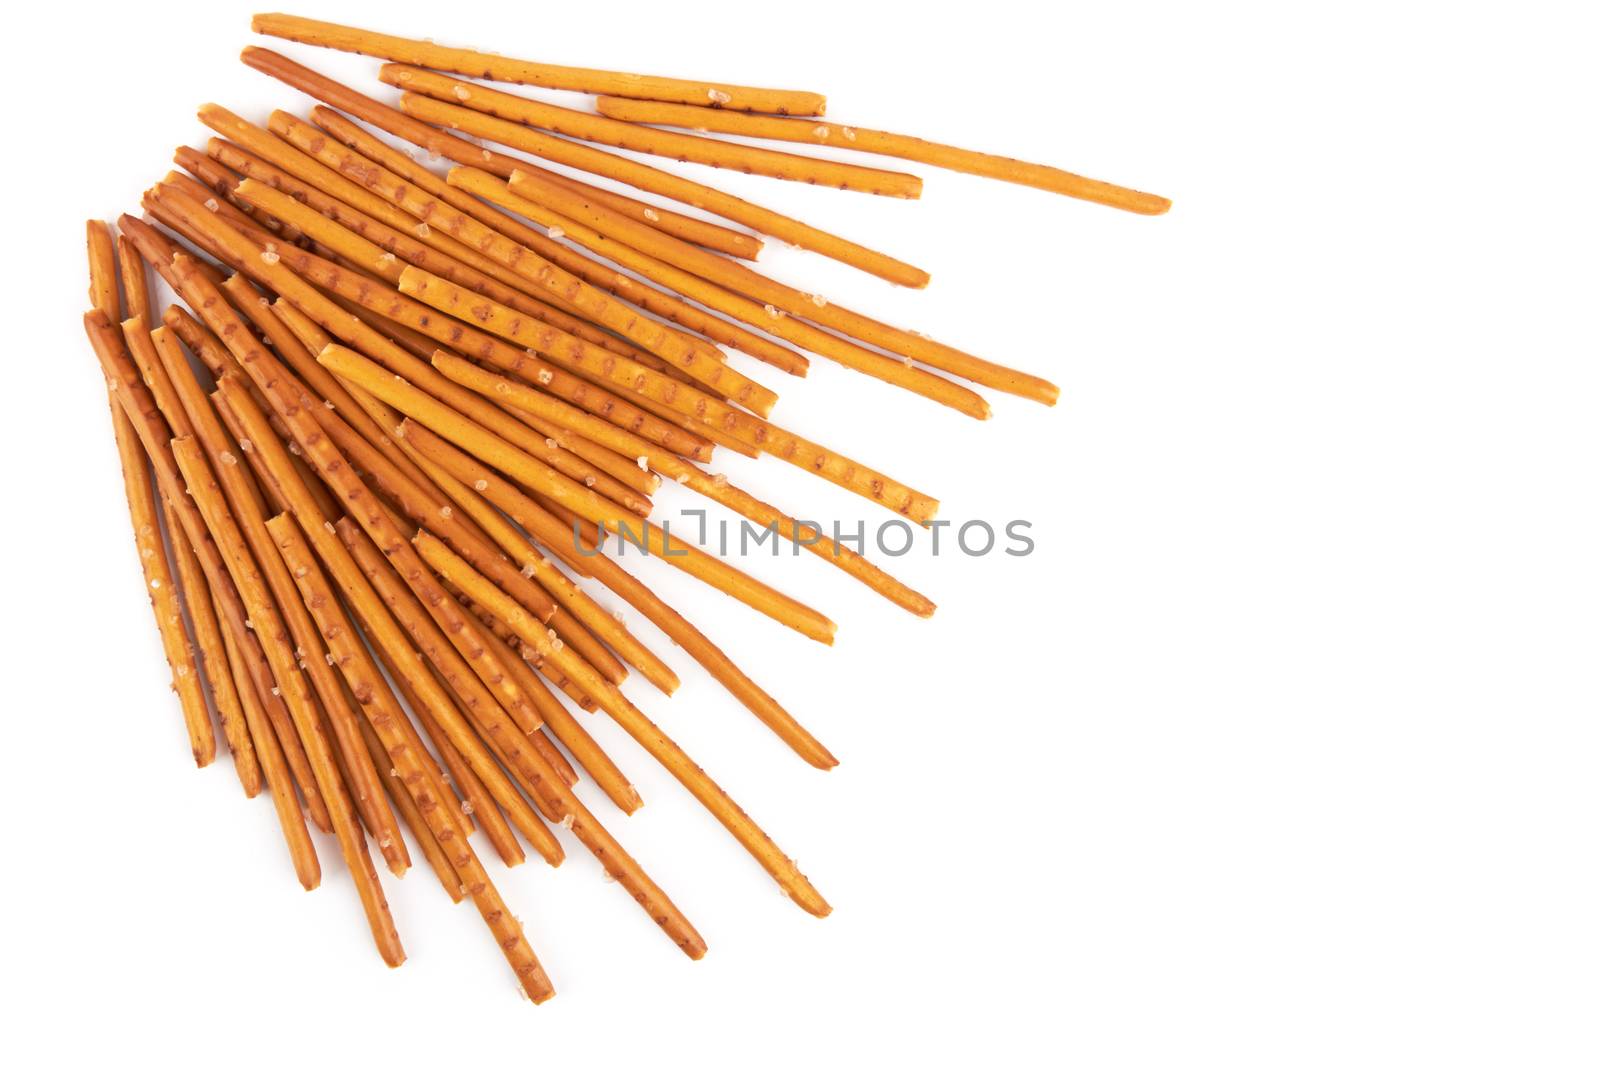 pretzel sticks on white by pioneer111